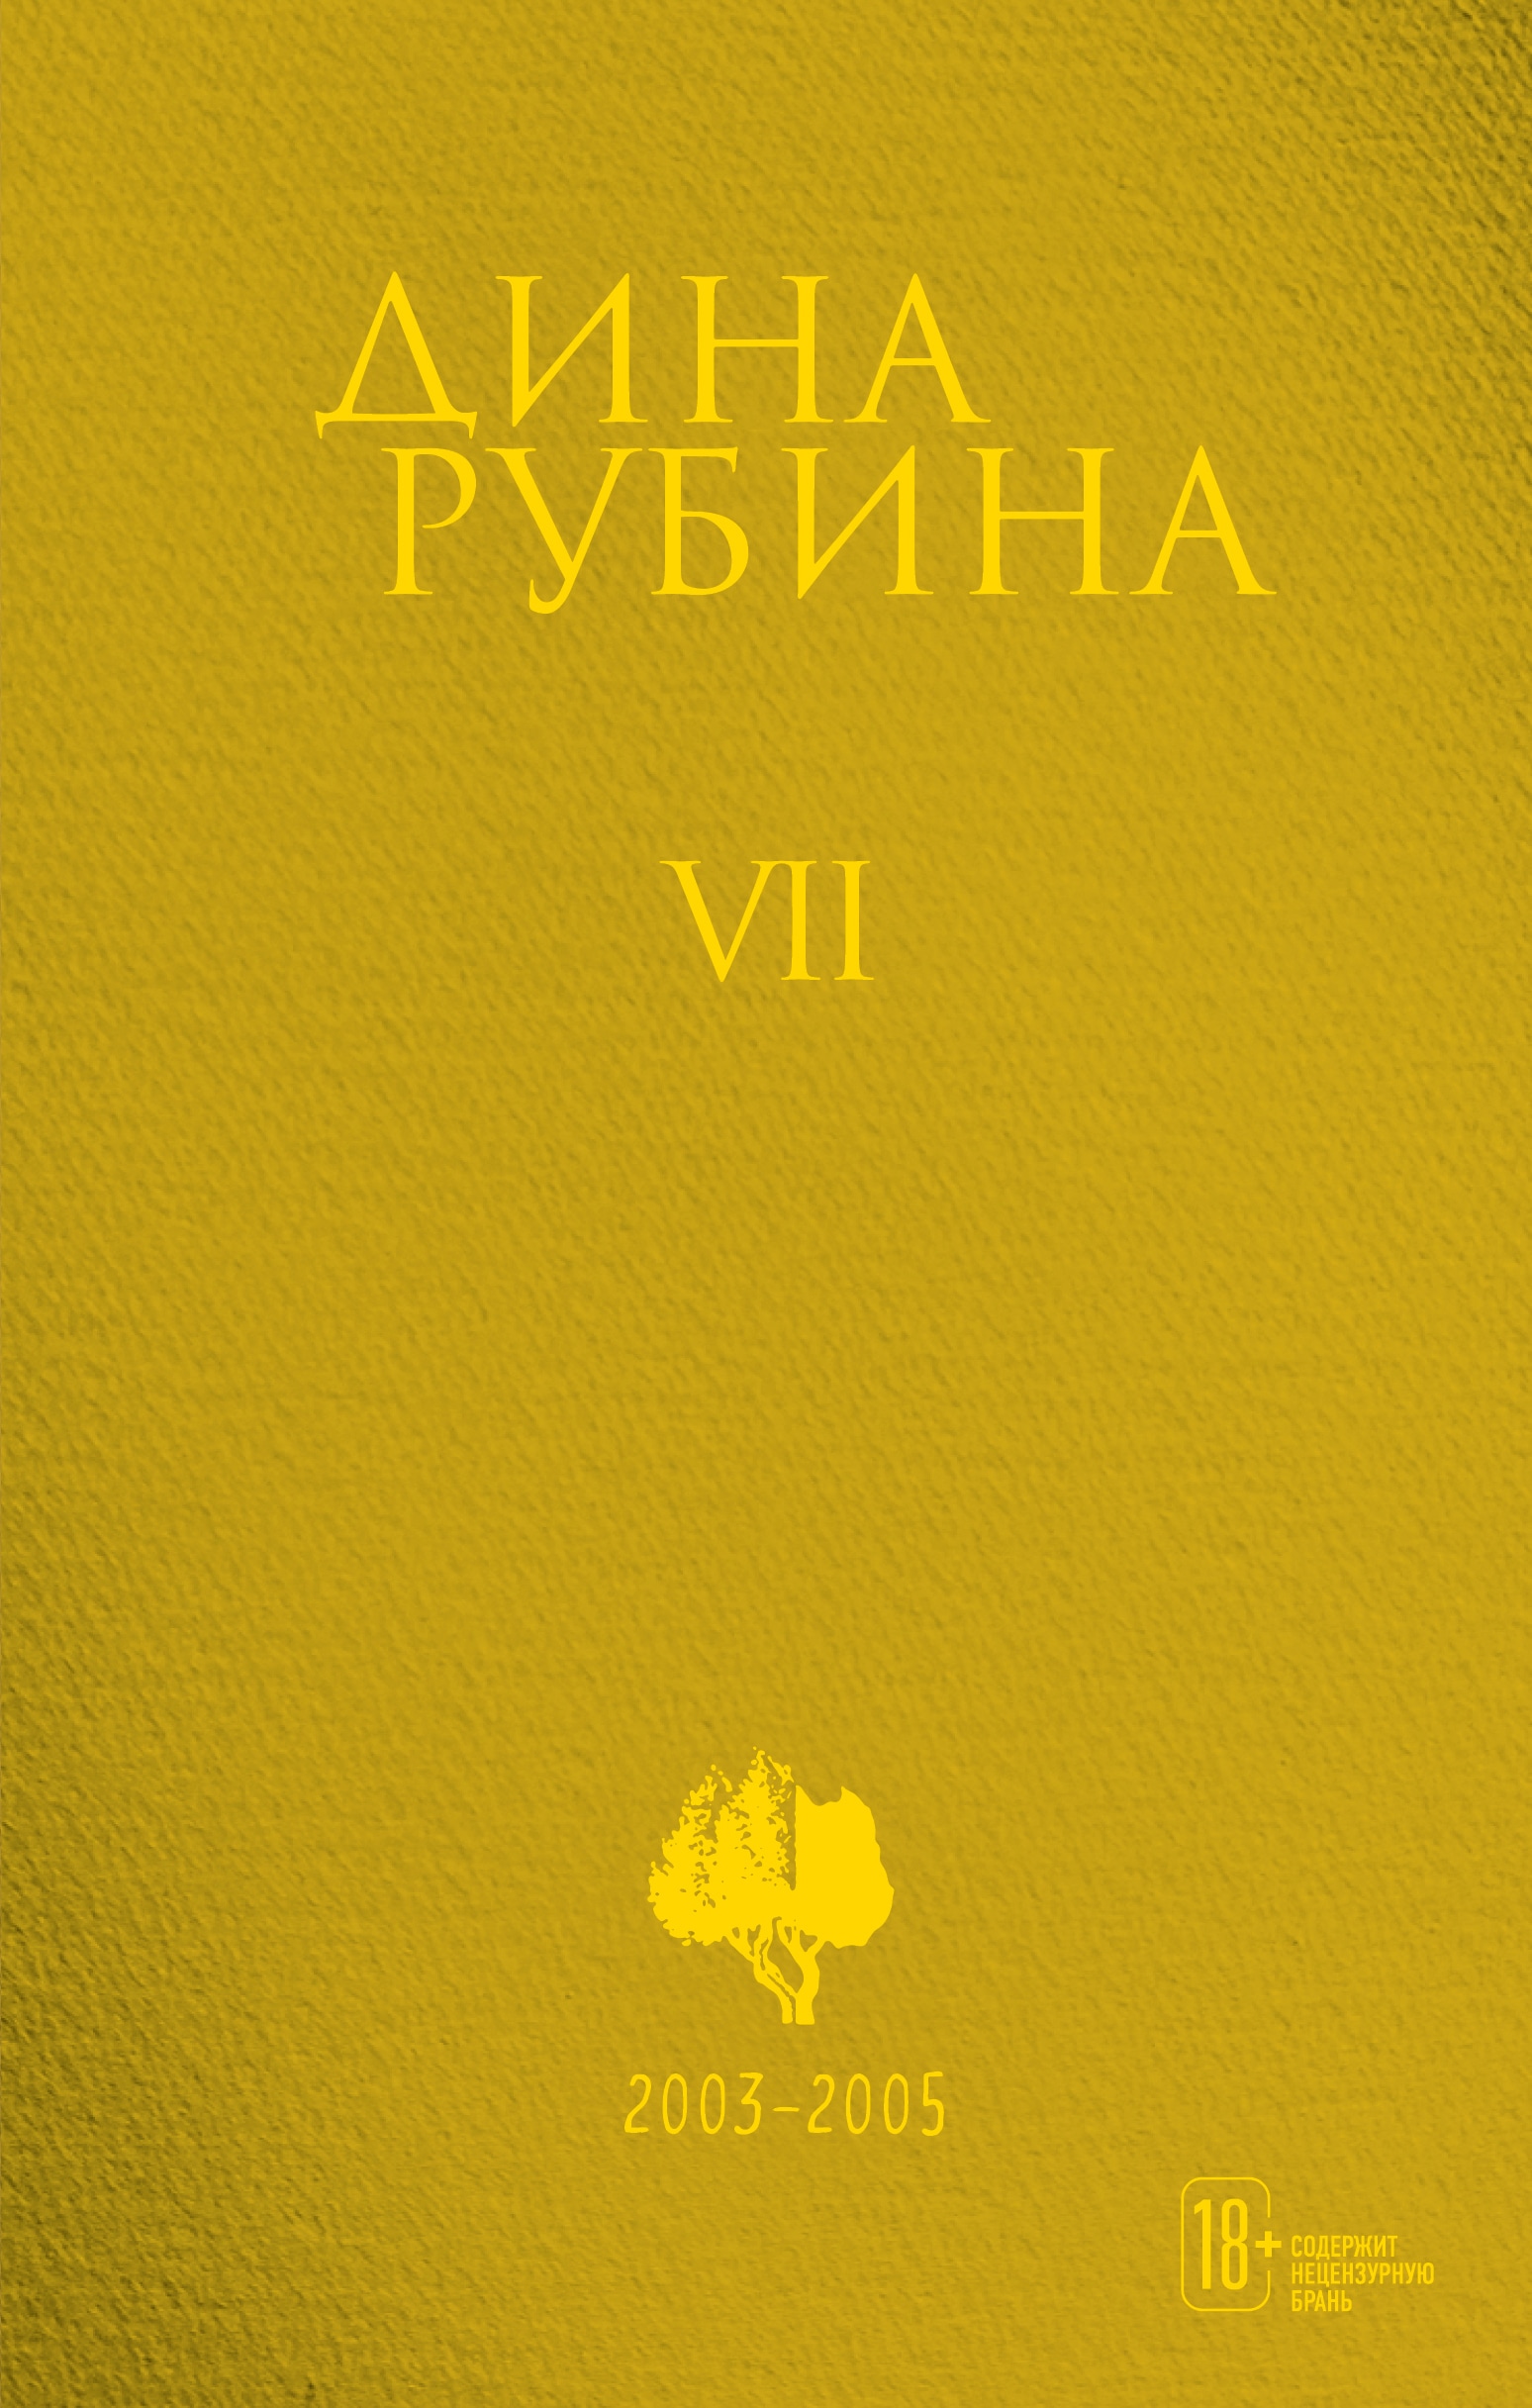 Book “Том 7” by Дина Рубина — October 21, 2021